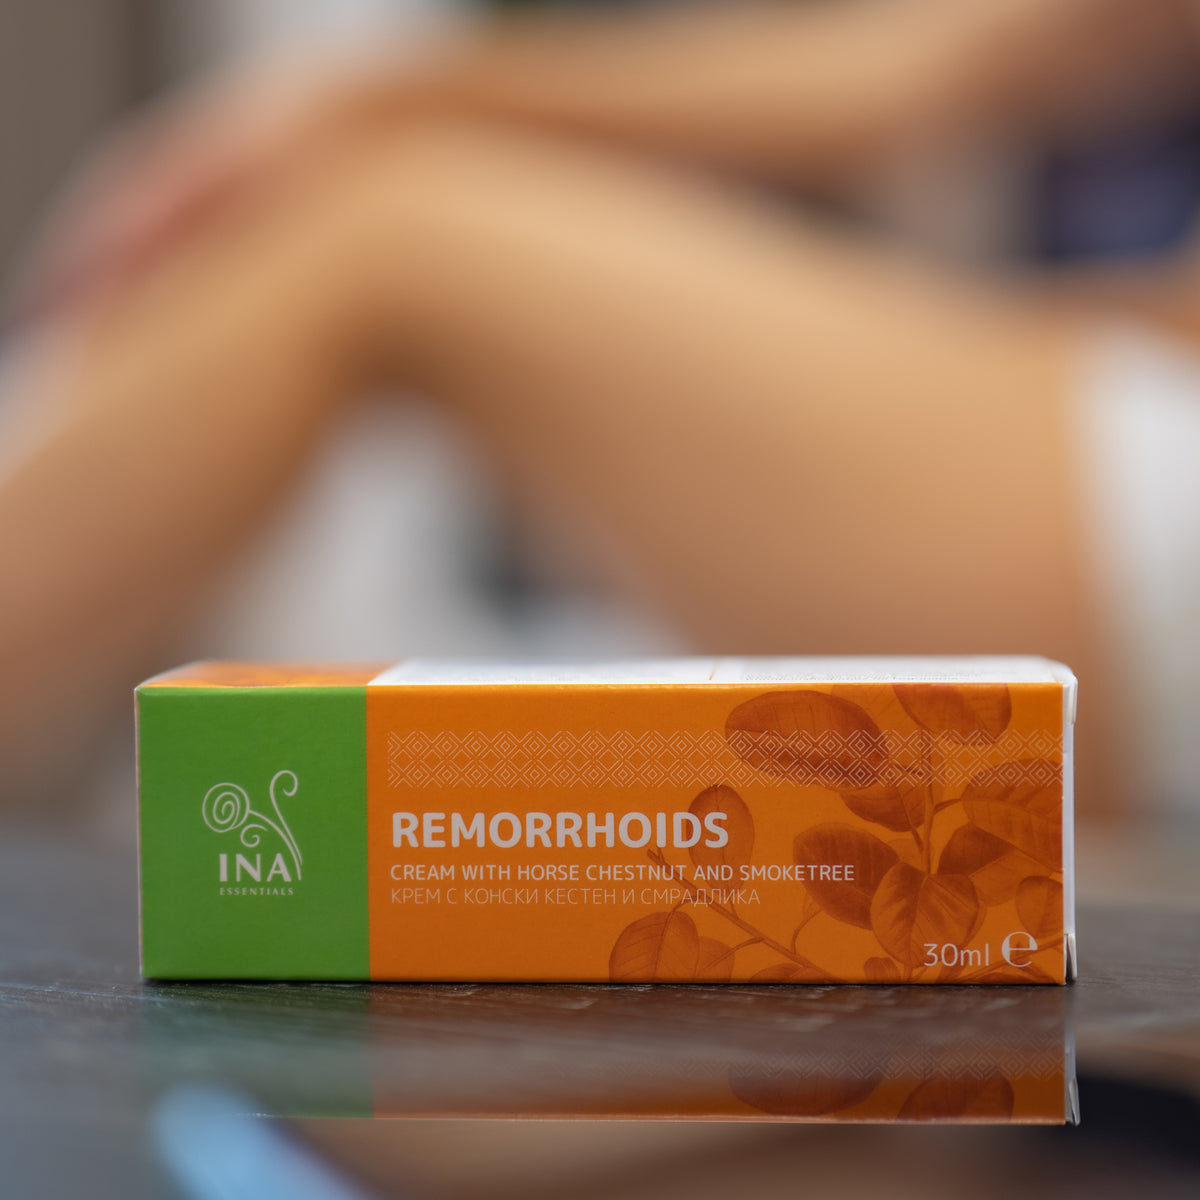 Remorrhoids – Rosskastanie und Perückenstrauch gegen Krampfadern und Hämorrhoiden – 30 ml (Creme)